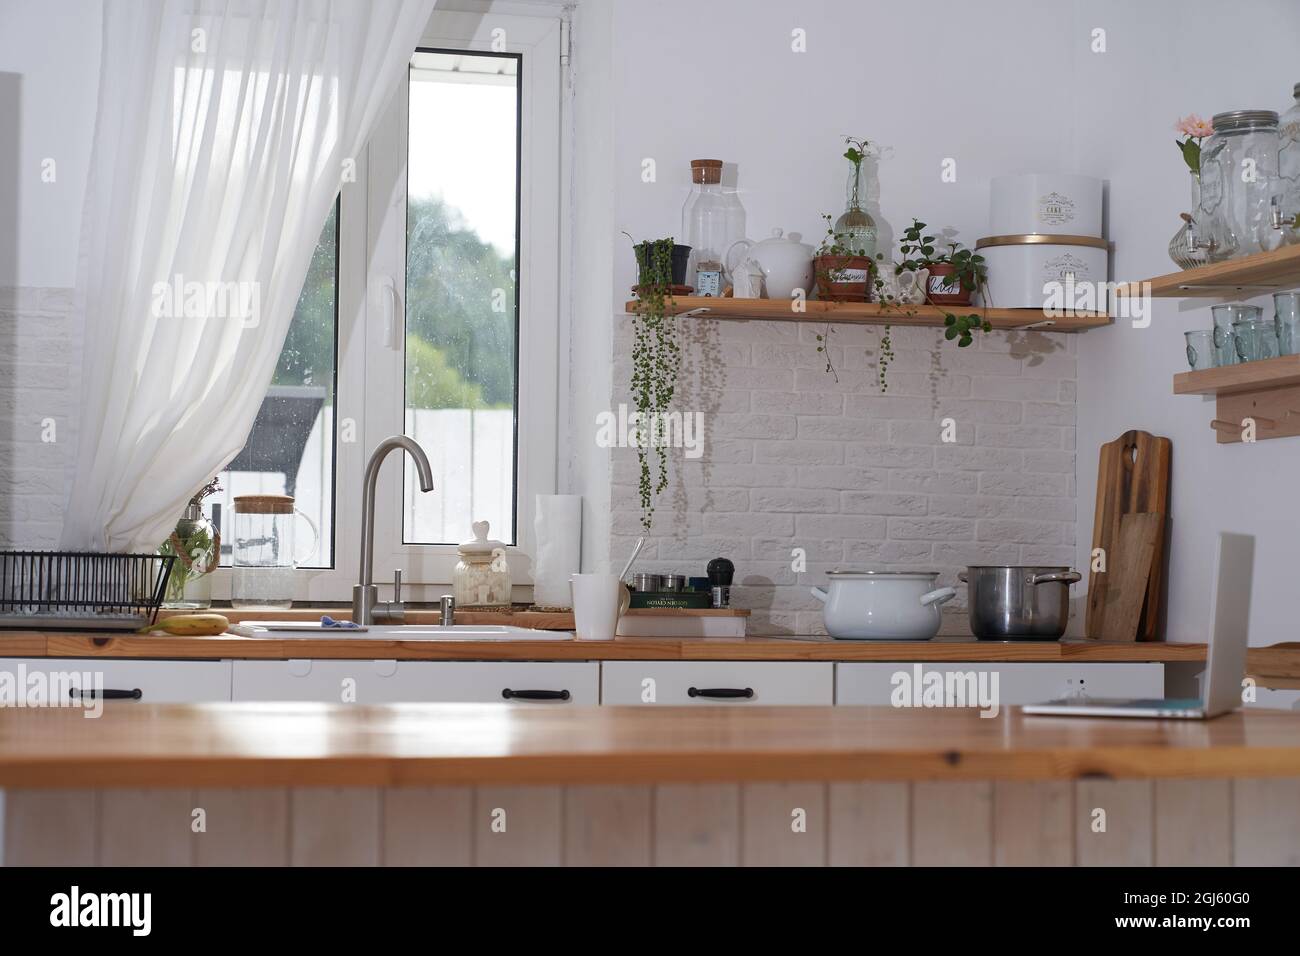 Erstaunliche Luxus-Küche Interieur in weißer Farbe mit einer hölzernen Kücheninsel. Hochwertige Fotos Stockfoto